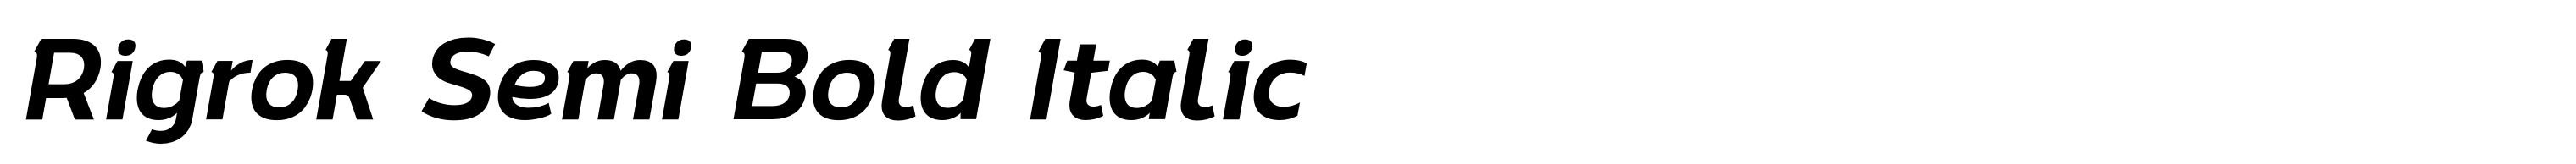 Rigrok Semi Bold Italic